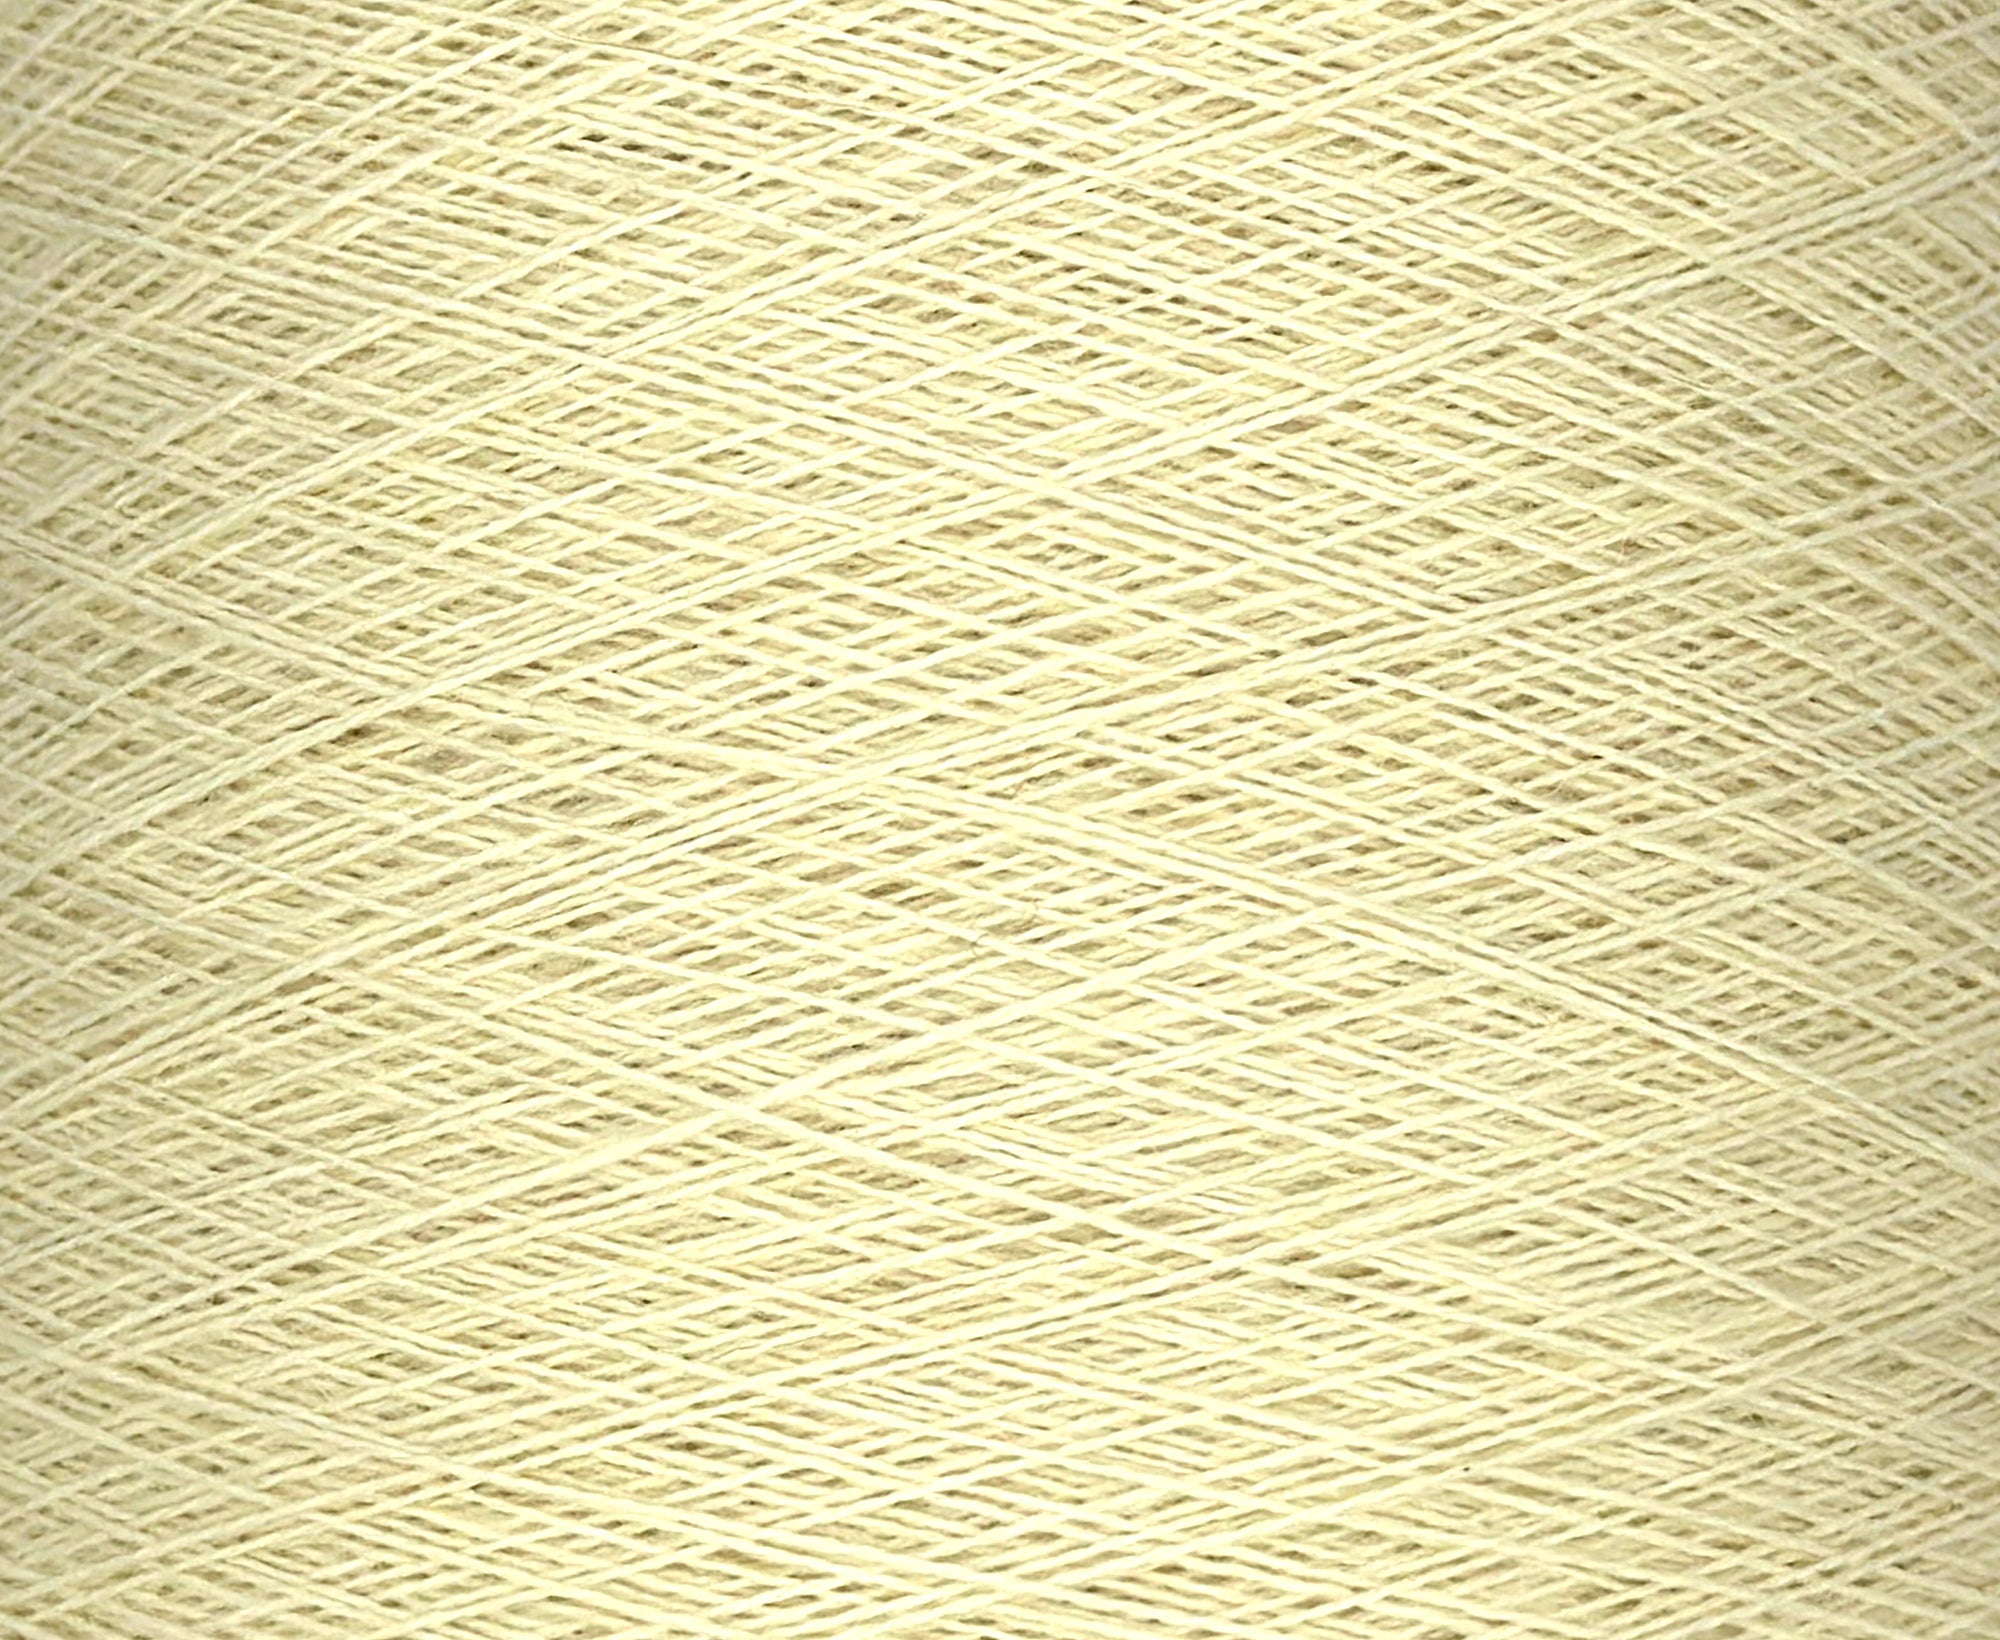 Dolce Vita Lace Machine Knitting Yarn